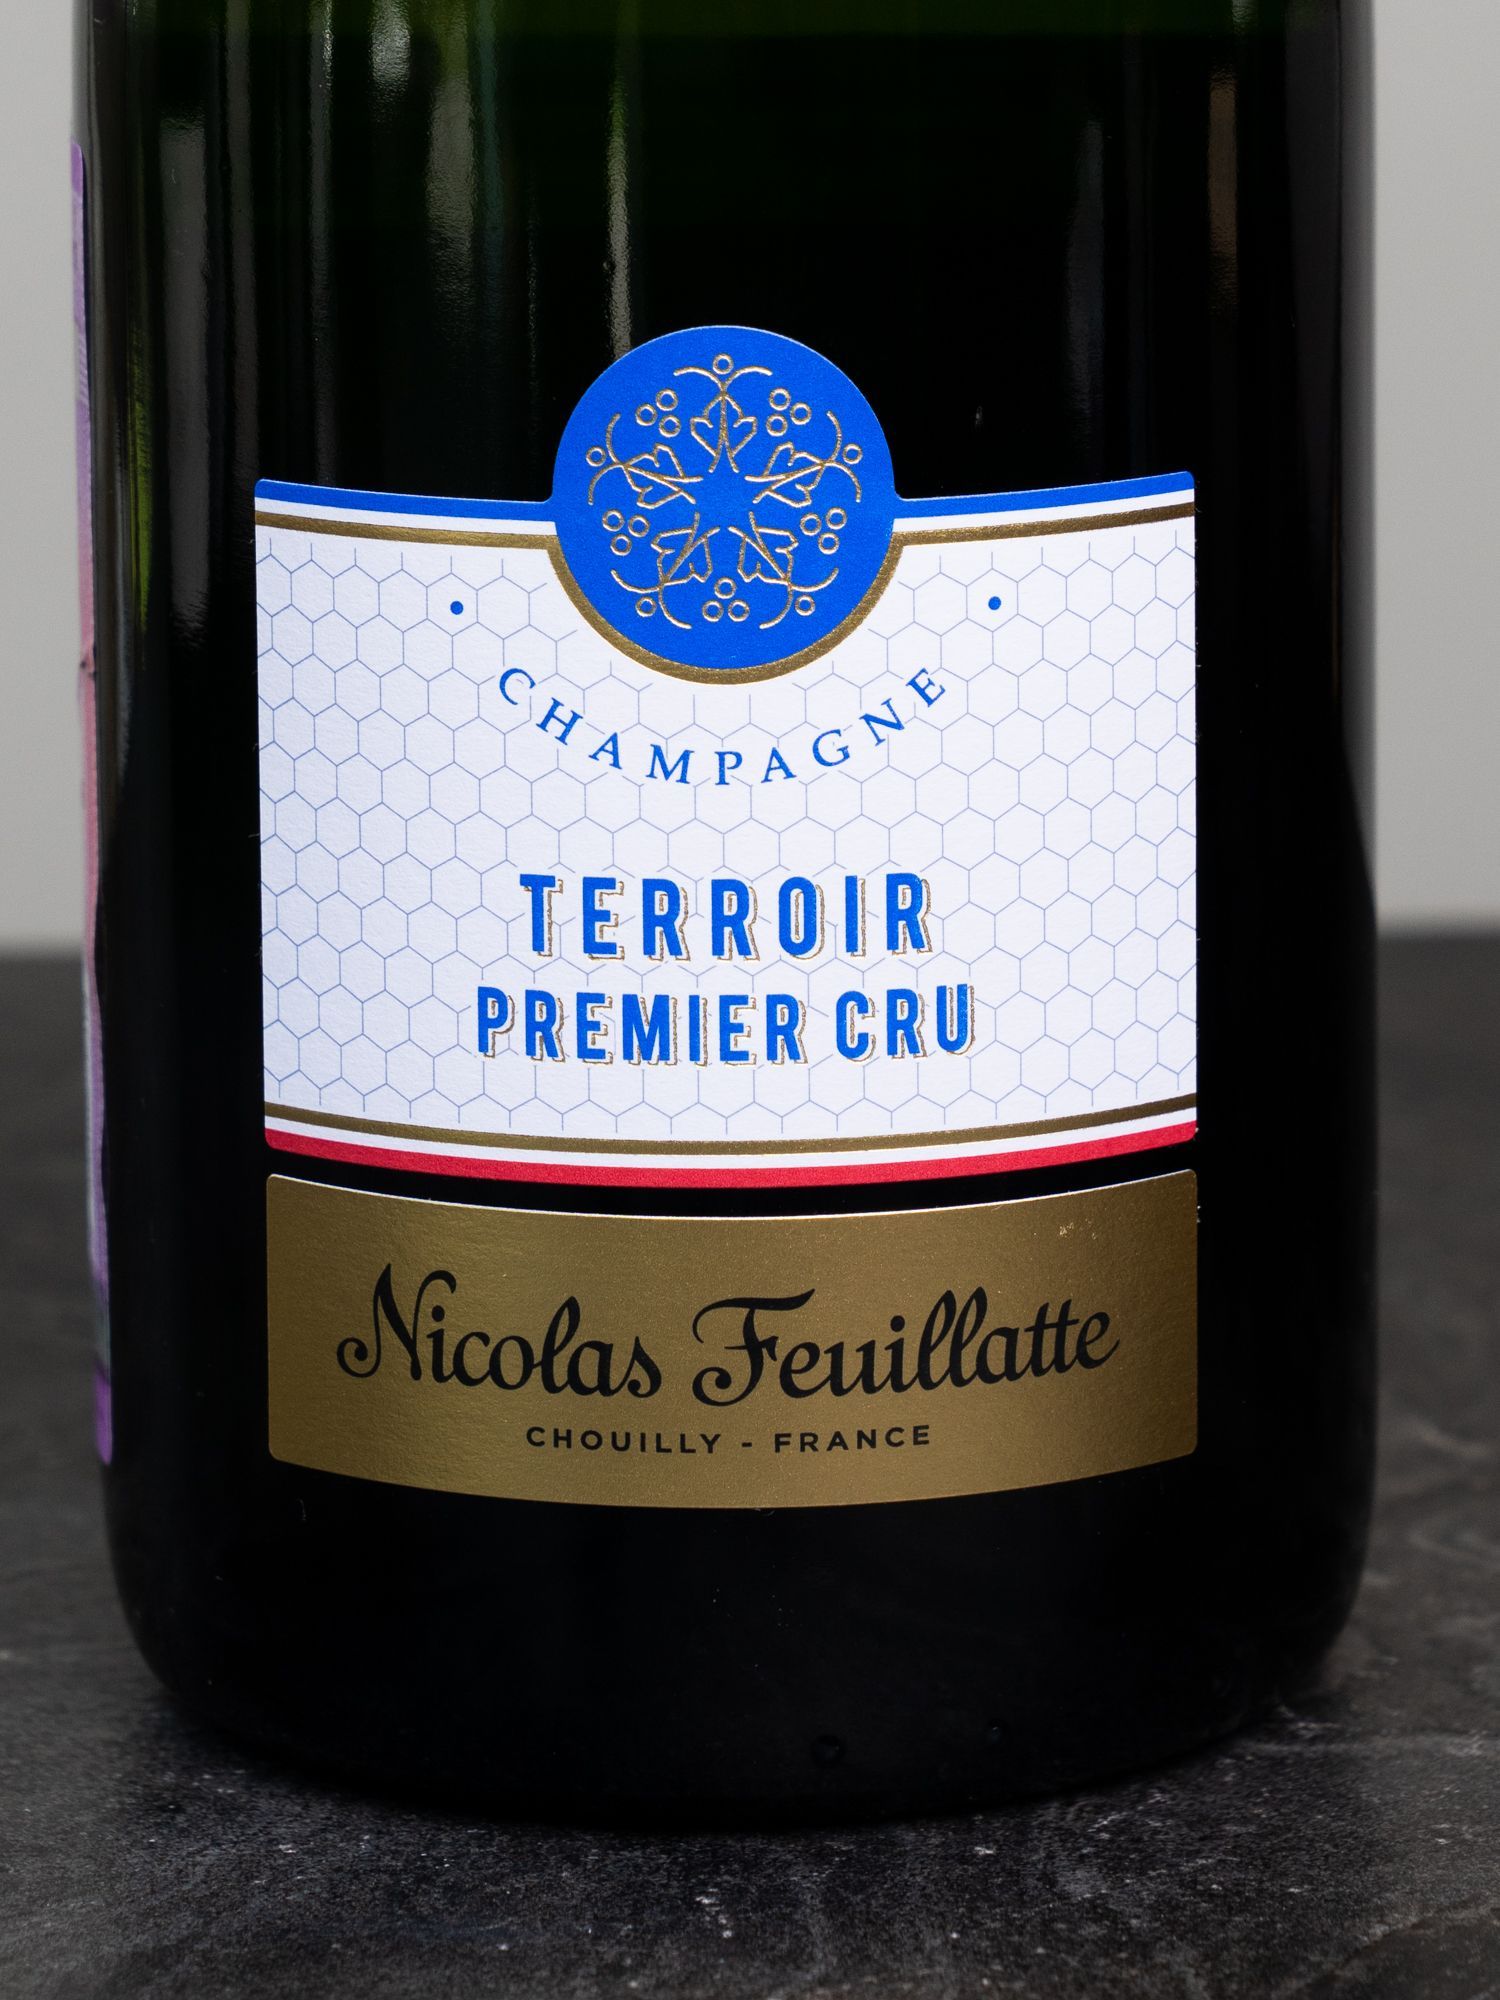 Шампанское Nicolas Feuillatte Terroir Premier Cru Brut Champagne / Николя Фейят Терруар Премье Крю Брют